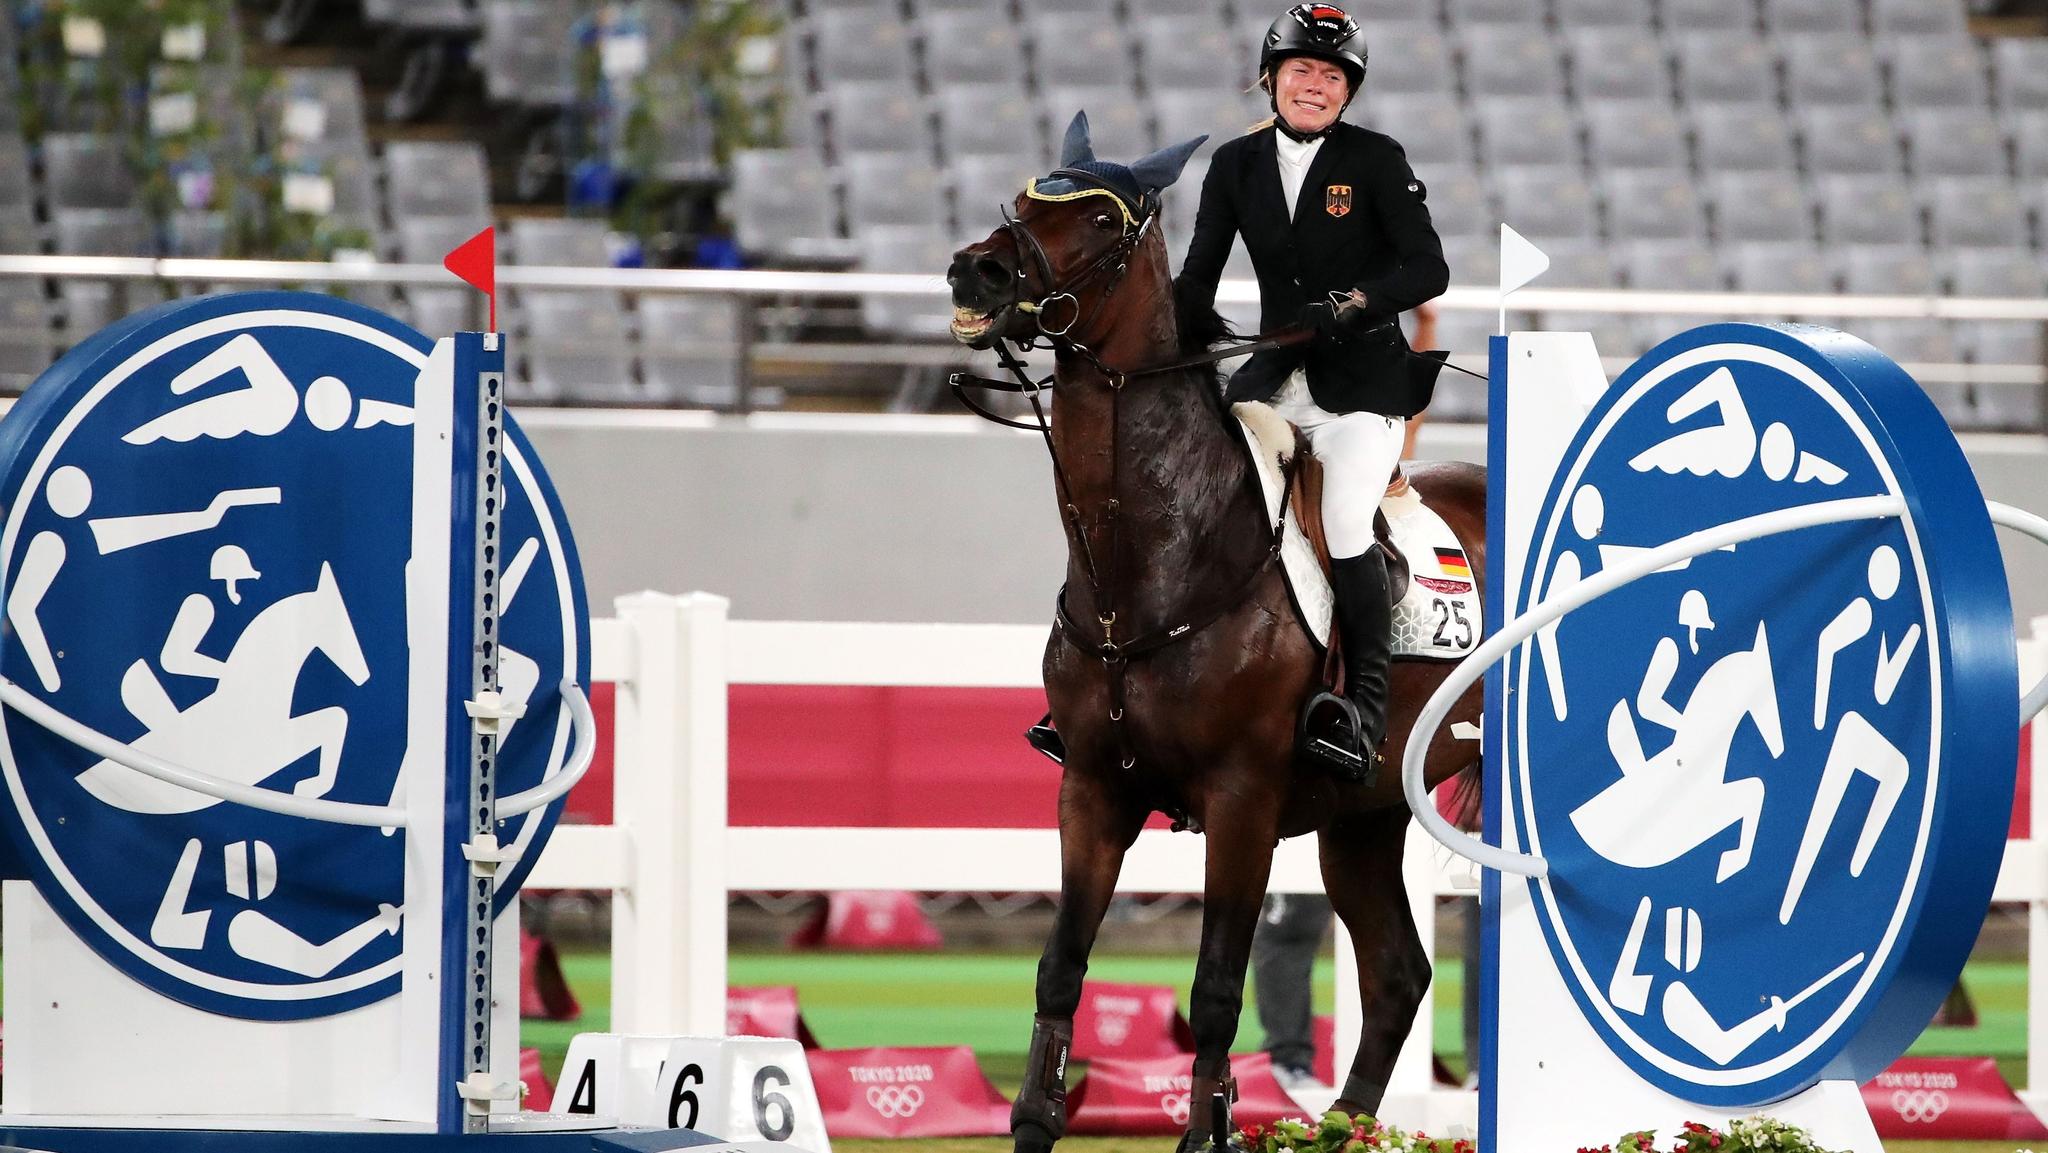 A alemã Annika Schleu chora após o cavalo Saint Boy destruir um obstáculo e suas chances de medalha no pentatlo moderno de Tóquio.